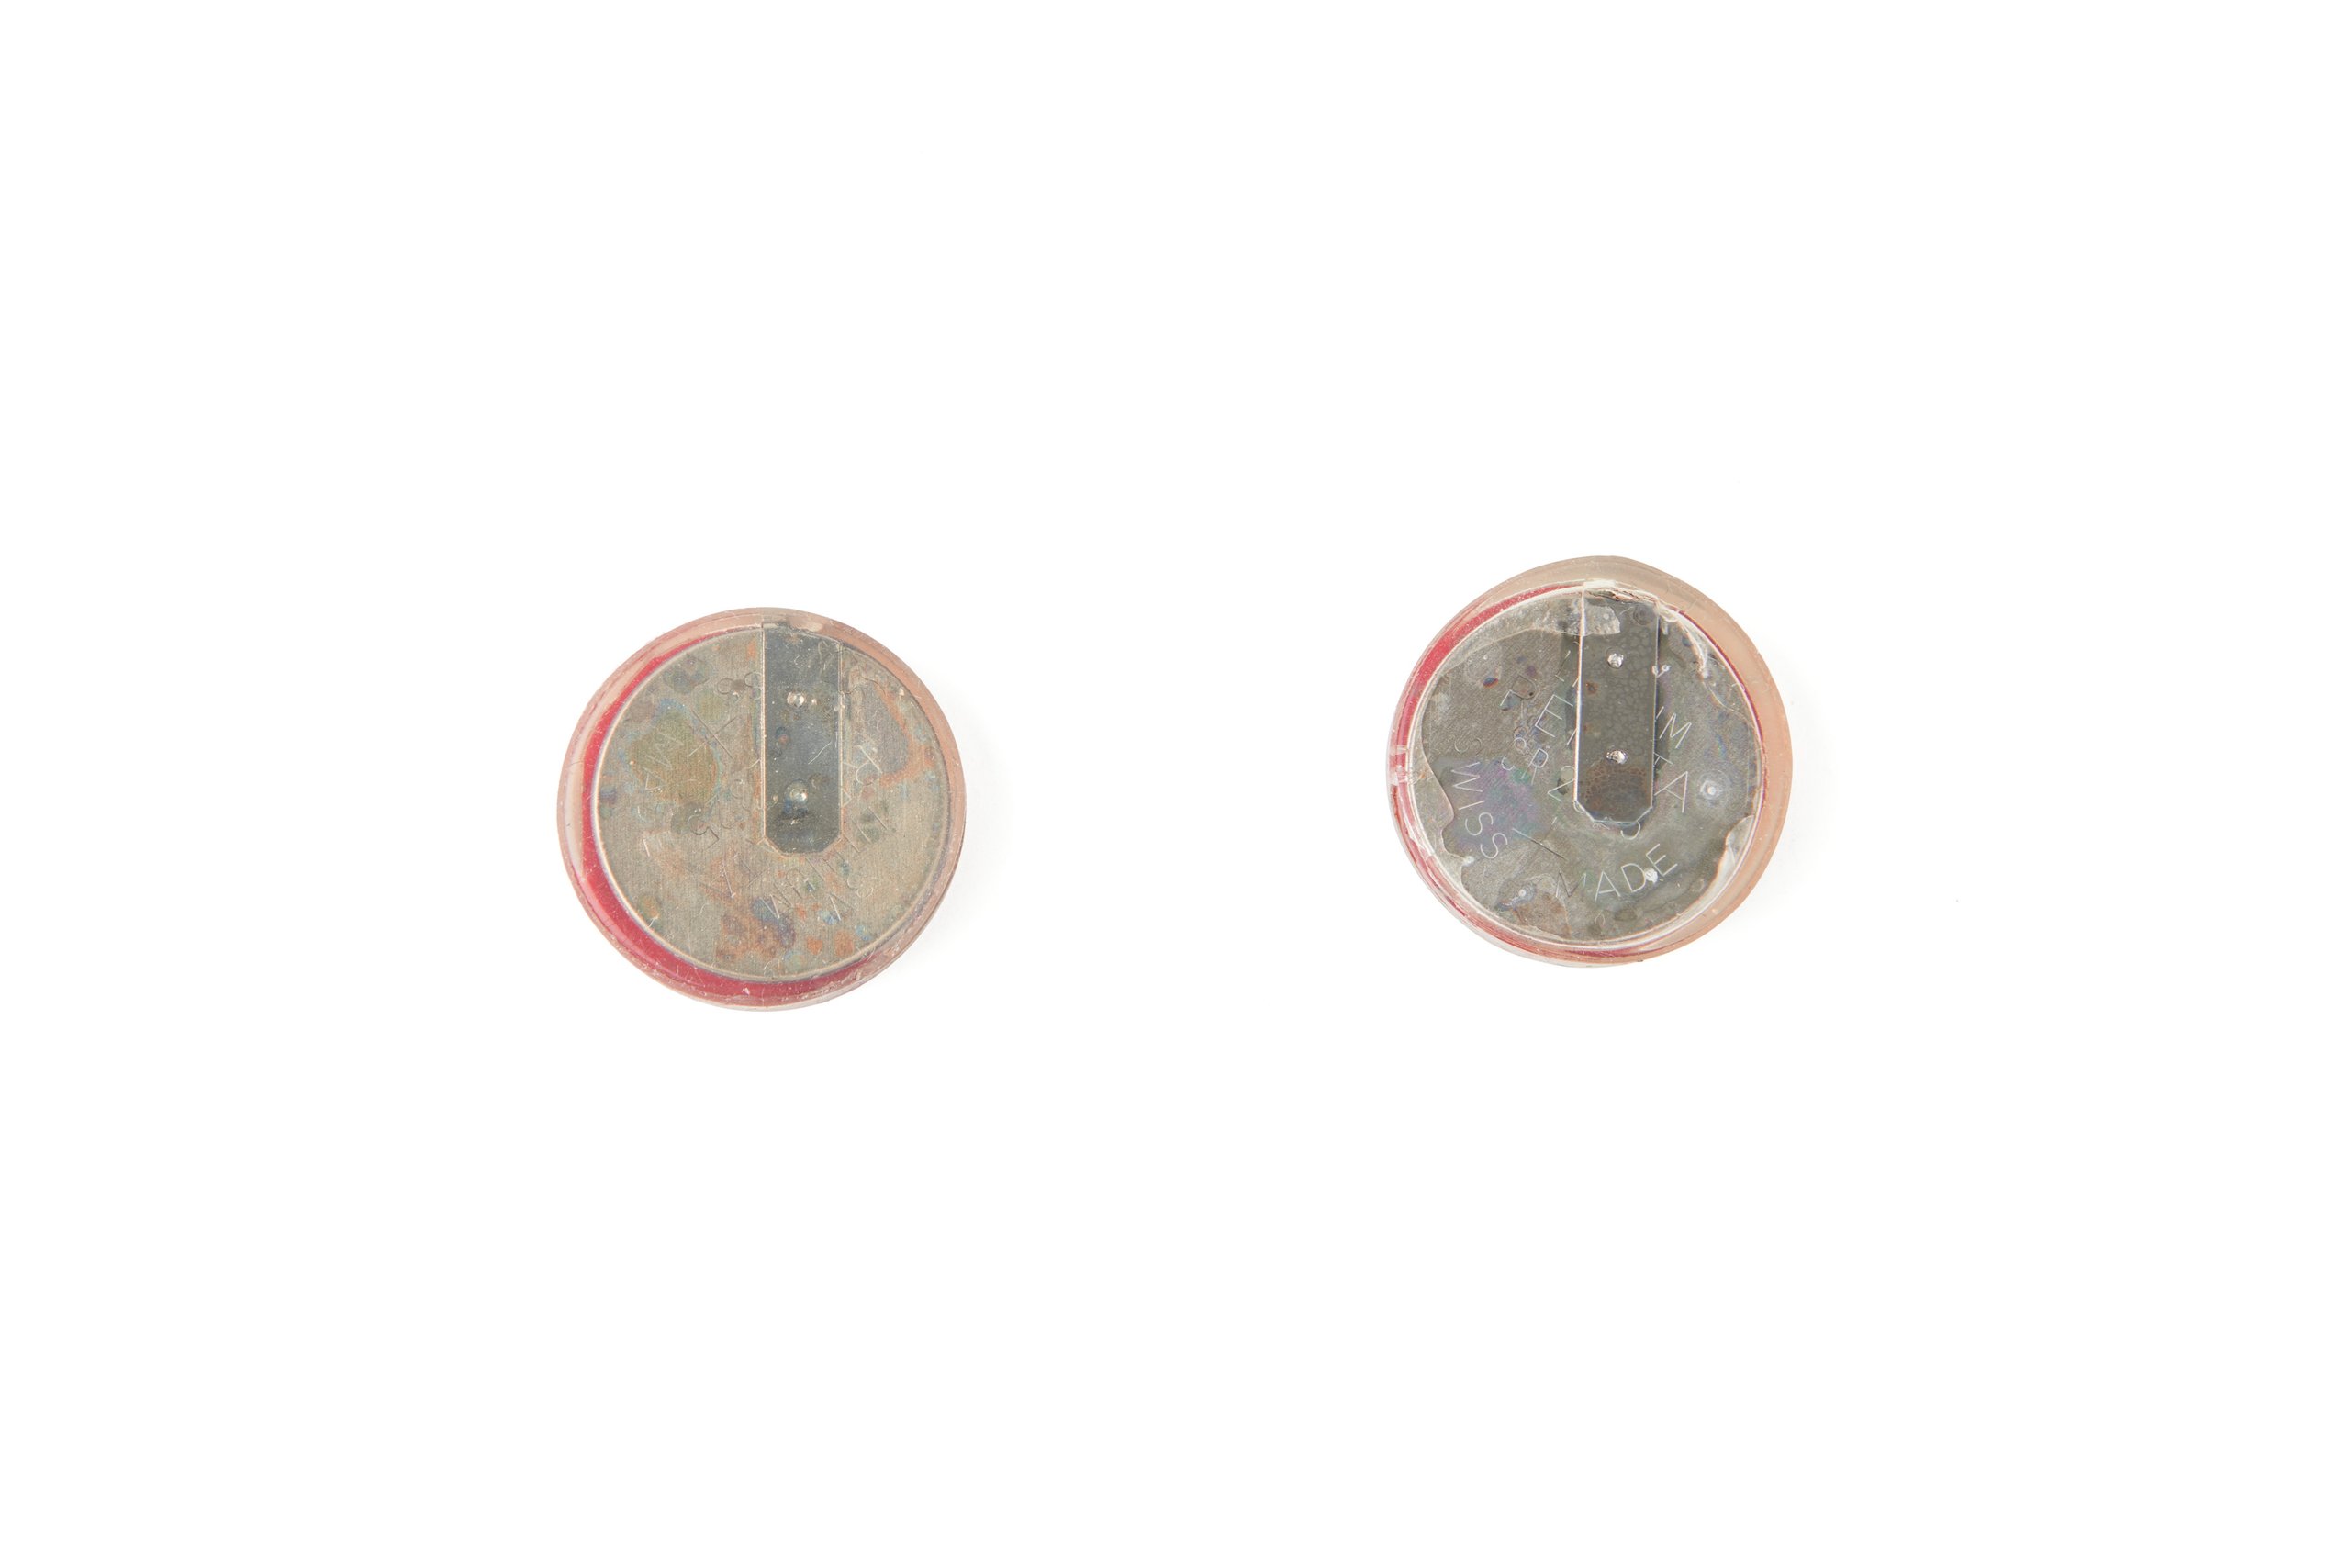 'Northstar V1' and 'Grindhouse V1 P2' subdermal LED light implants